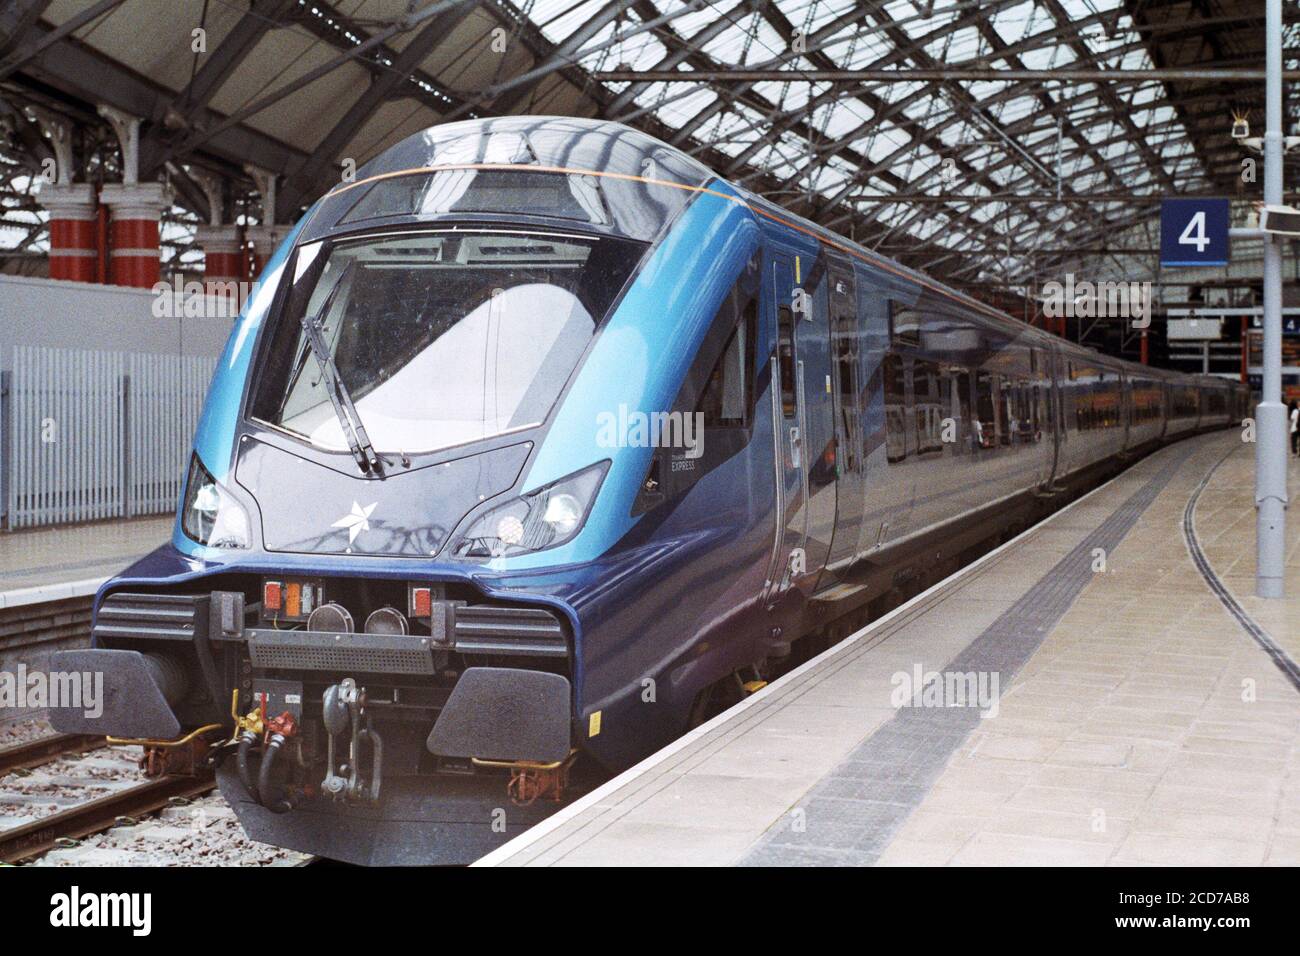 Liverpool, UK - 8 agosto 2020: Un treno TPE (TransPennine Express) al Liverpool Lime Street Platform 4 per il servizio espresso. Foto Stock